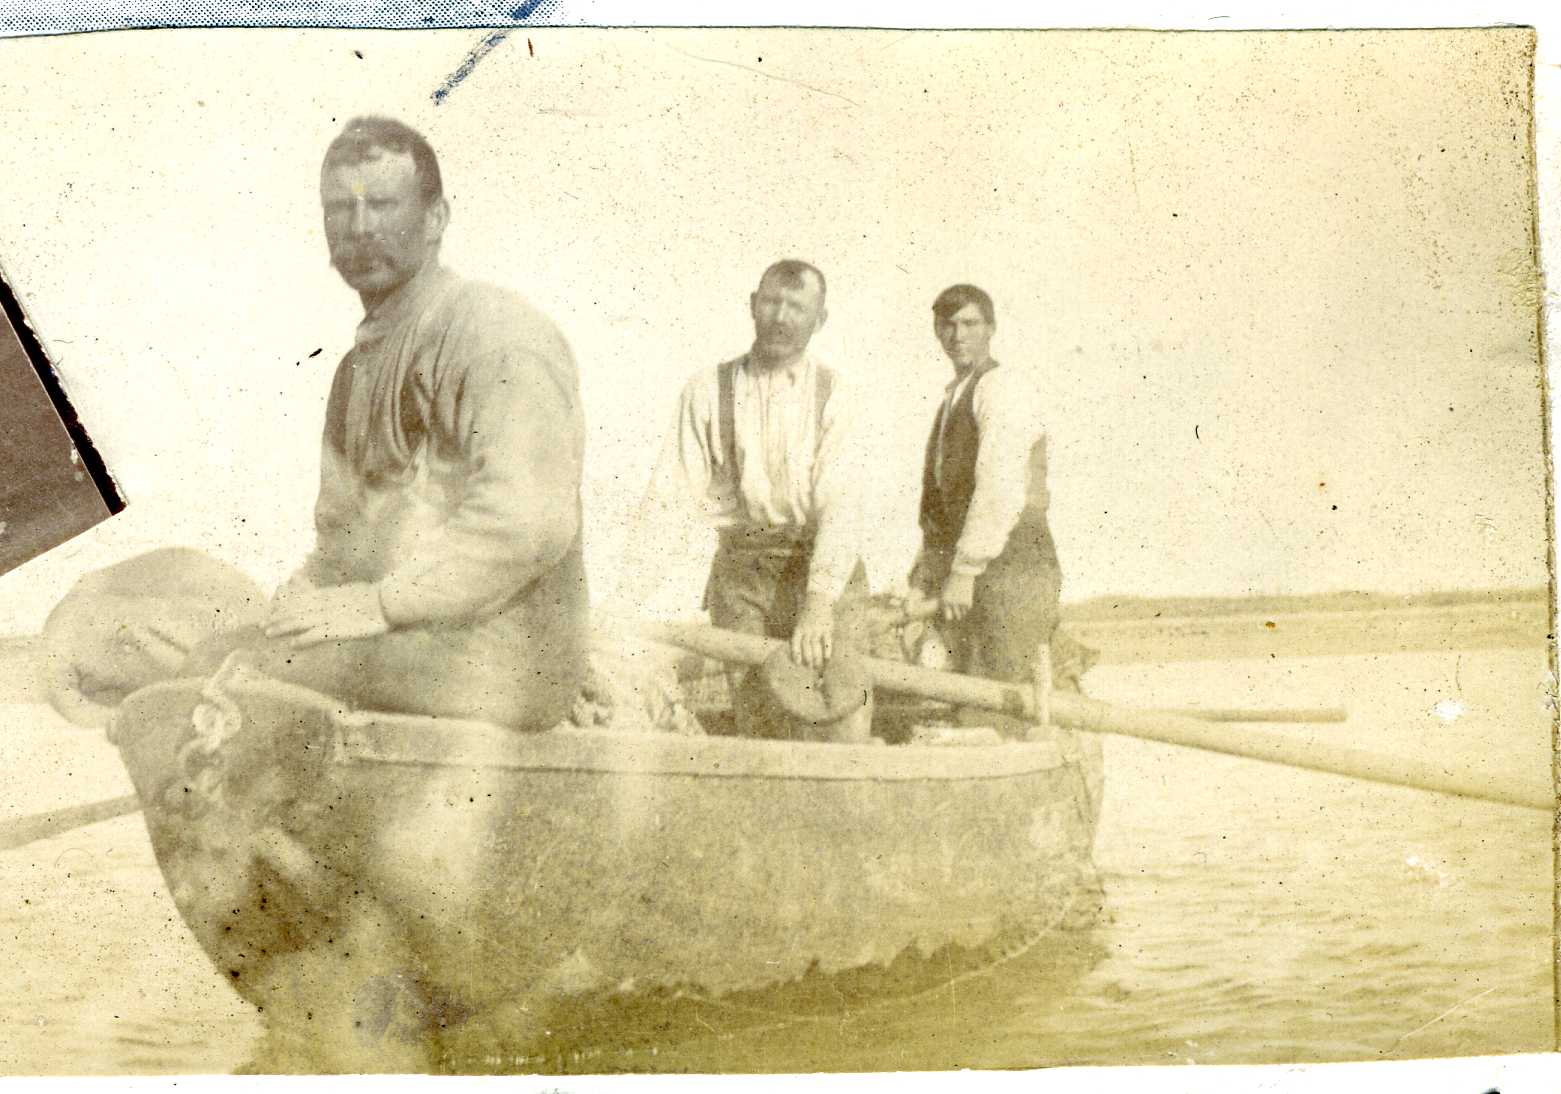 3 men in a fishing boat in 1908.